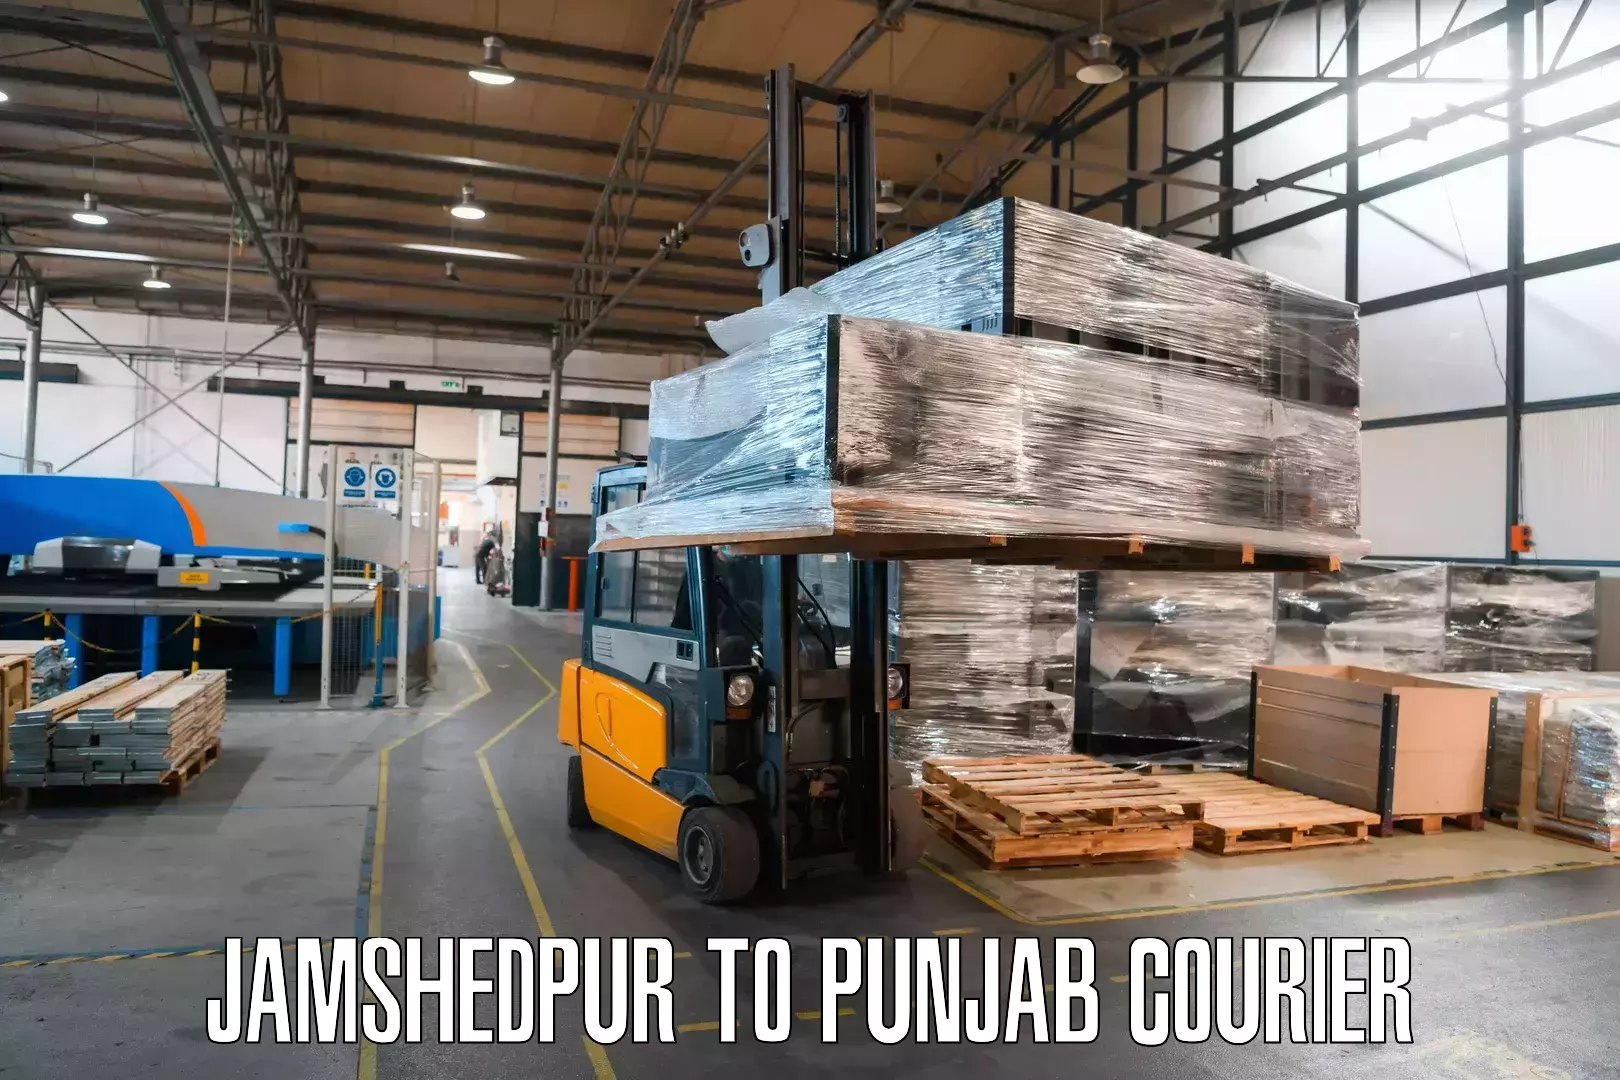 Digital courier platforms Jamshedpur to Abohar